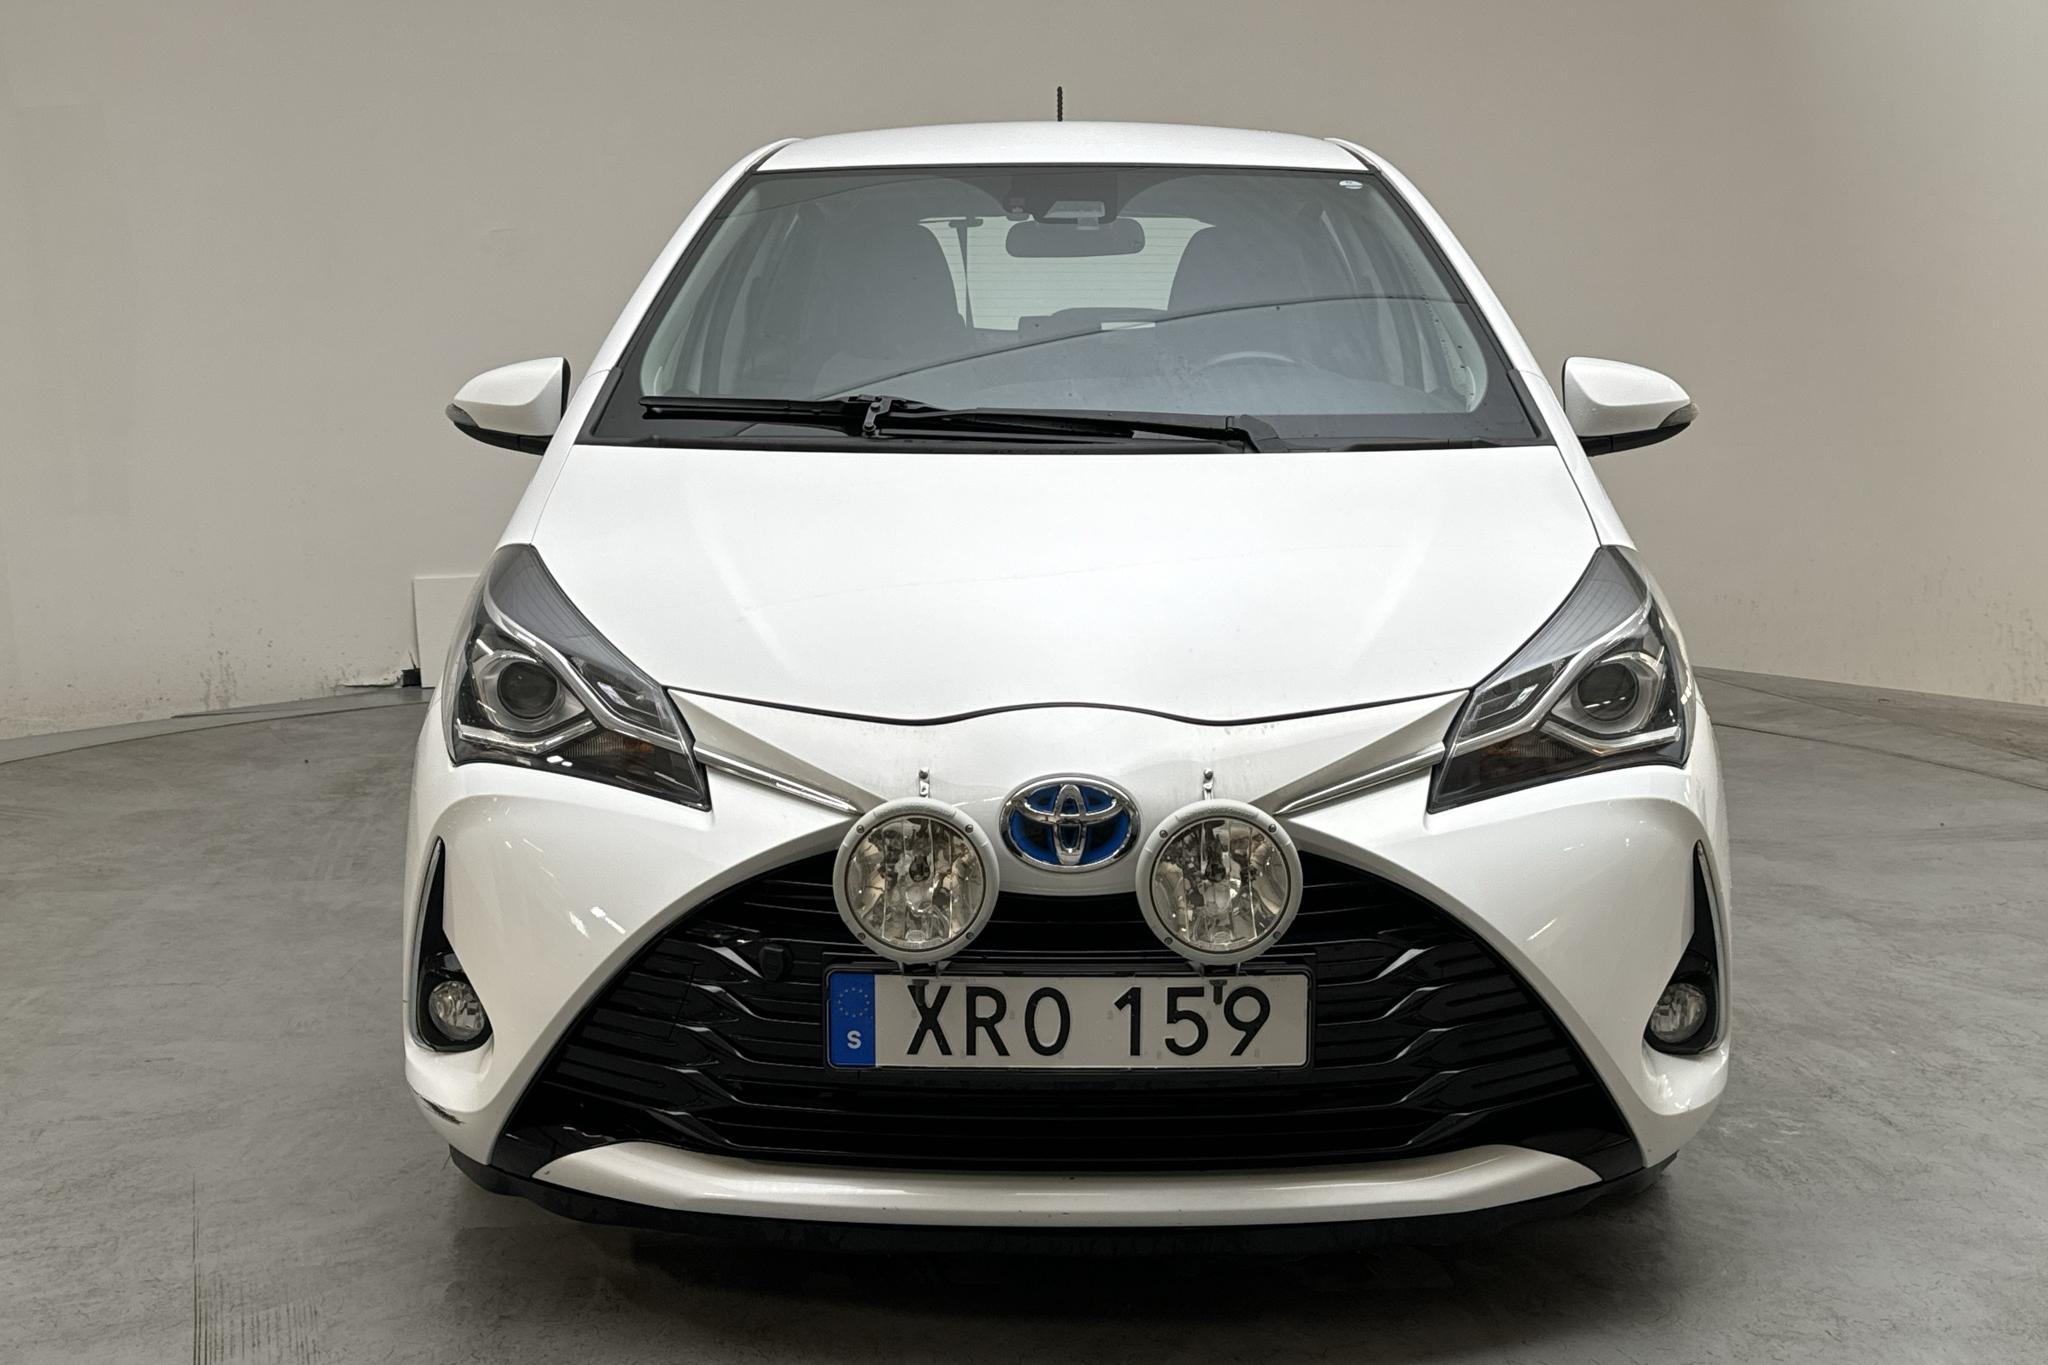 Toyota Yaris 1.5 Hybrid 5dr (101hk) - 179 650 km - Automatyczna - biały - 2018